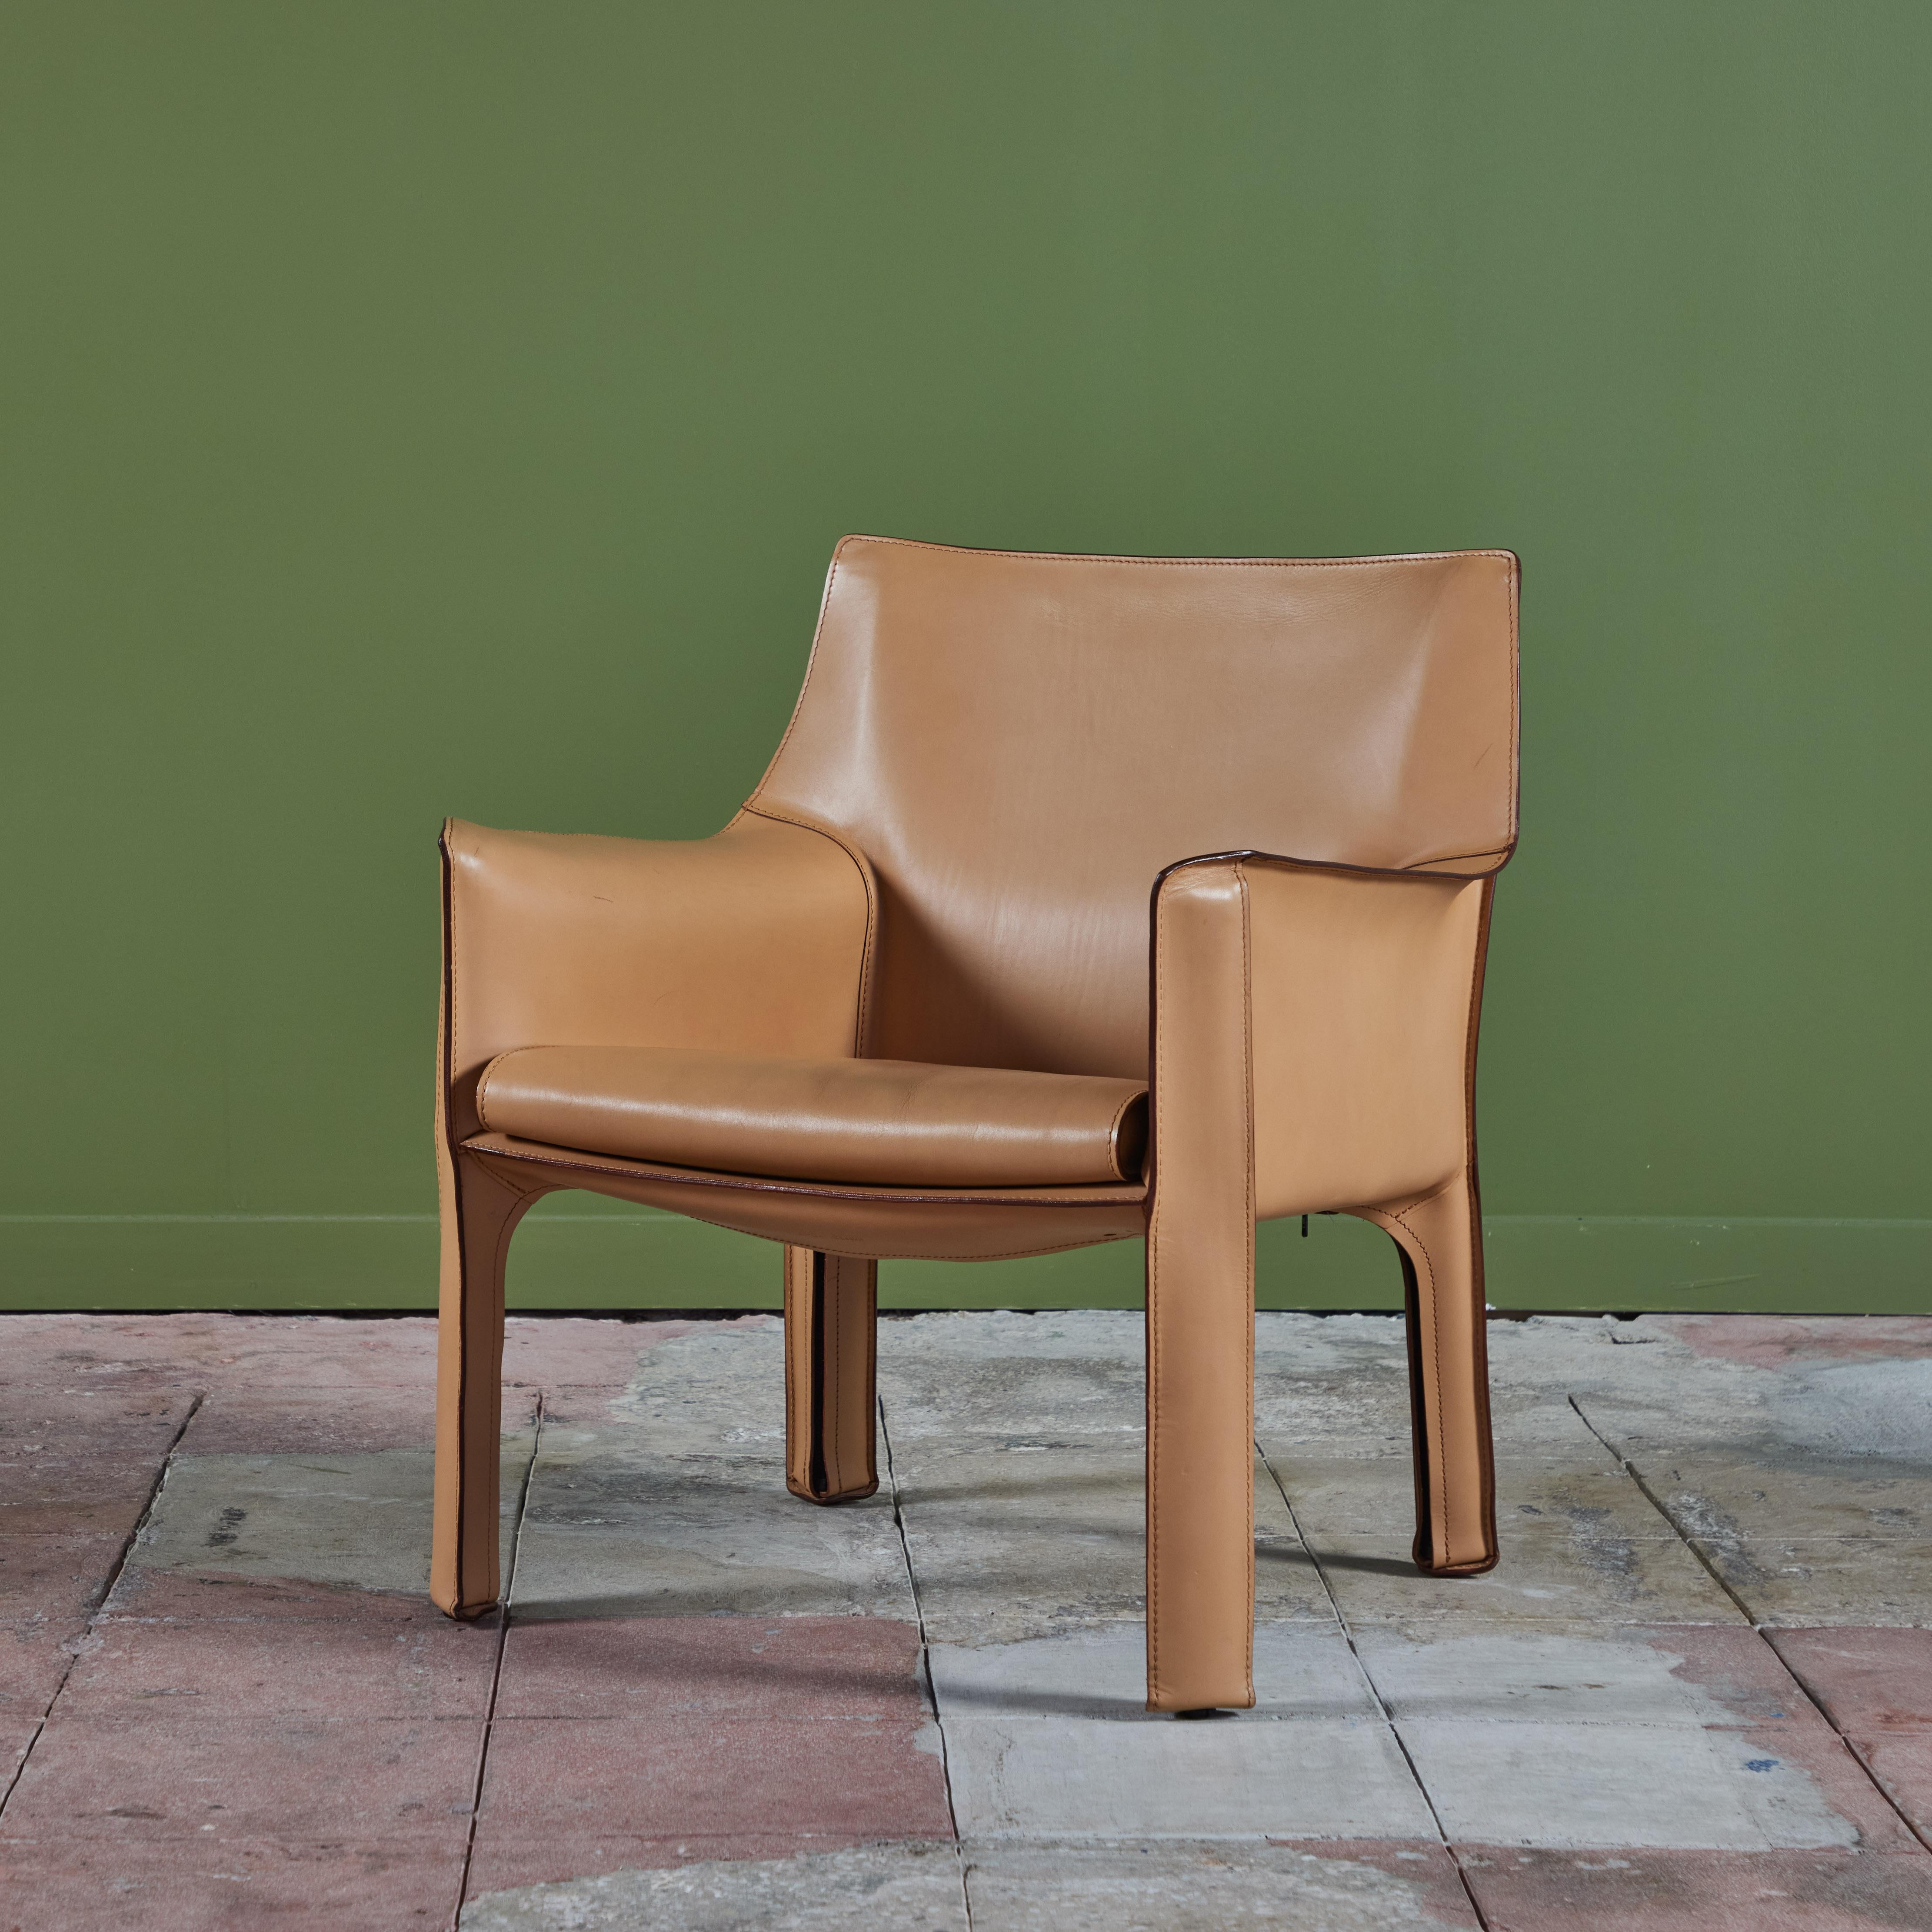 Dieser ikonische Stuhl wurde von Mario Bellini für Cassina in den 1970er Jahren in Italien entworfen. Er besteht aus naturfarbenem Sattelleder, das auf einen Stahlrahmen aufgezogen ist. Der Sitz hat ein abgerundetes, geschwungenes Sitzkissen aus